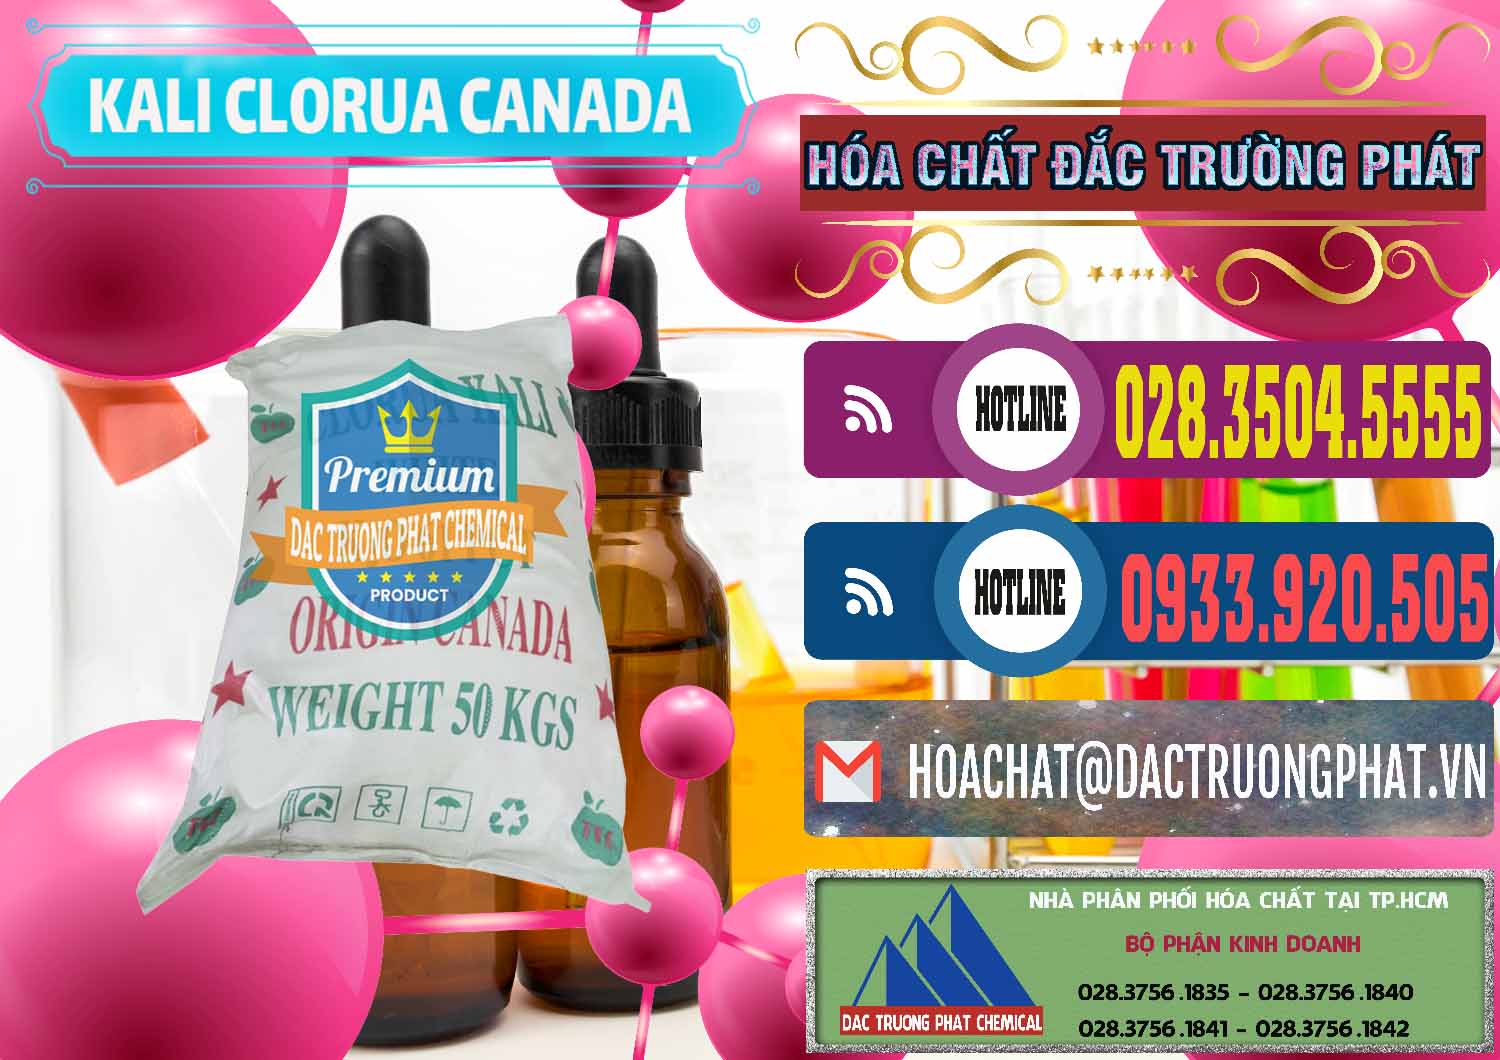 Đơn vị chuyên bán & phân phối KCL – Kali Clorua Trắng Canada - 0437 - Cty chuyên cung cấp ( bán ) hóa chất tại TP.HCM - muabanhoachat.com.vn